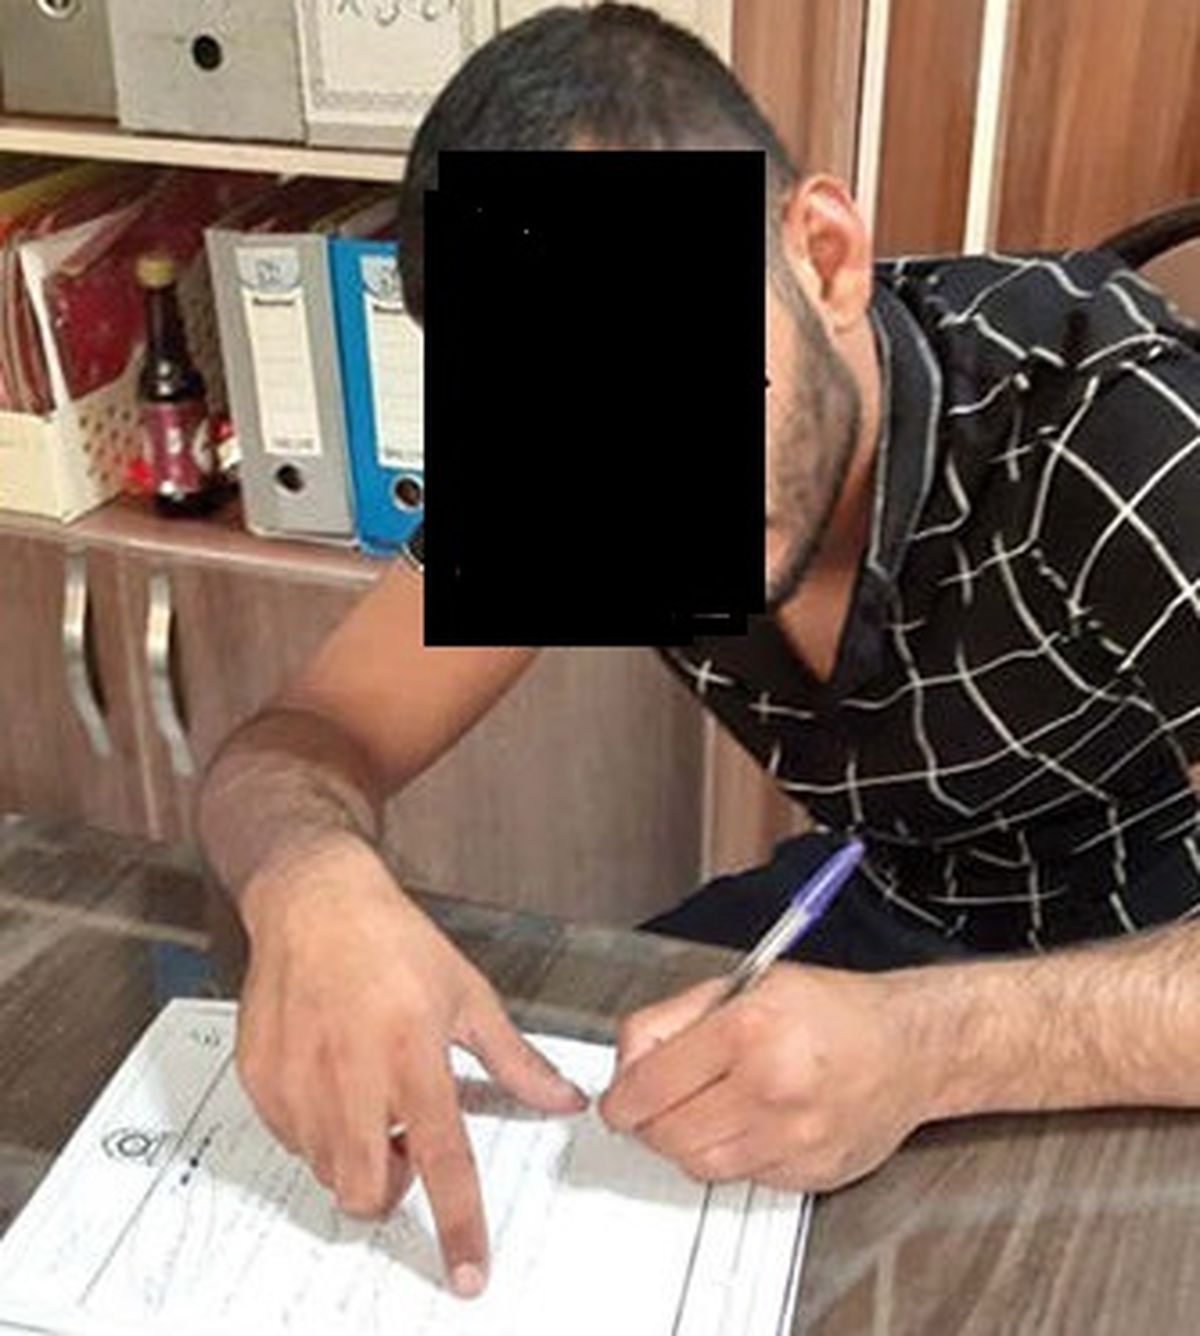 اعتراف به تلخ ترین قتل / کودک مشهدی در آغوش مادرش جان سپرد + عکس متهم 22 ساله